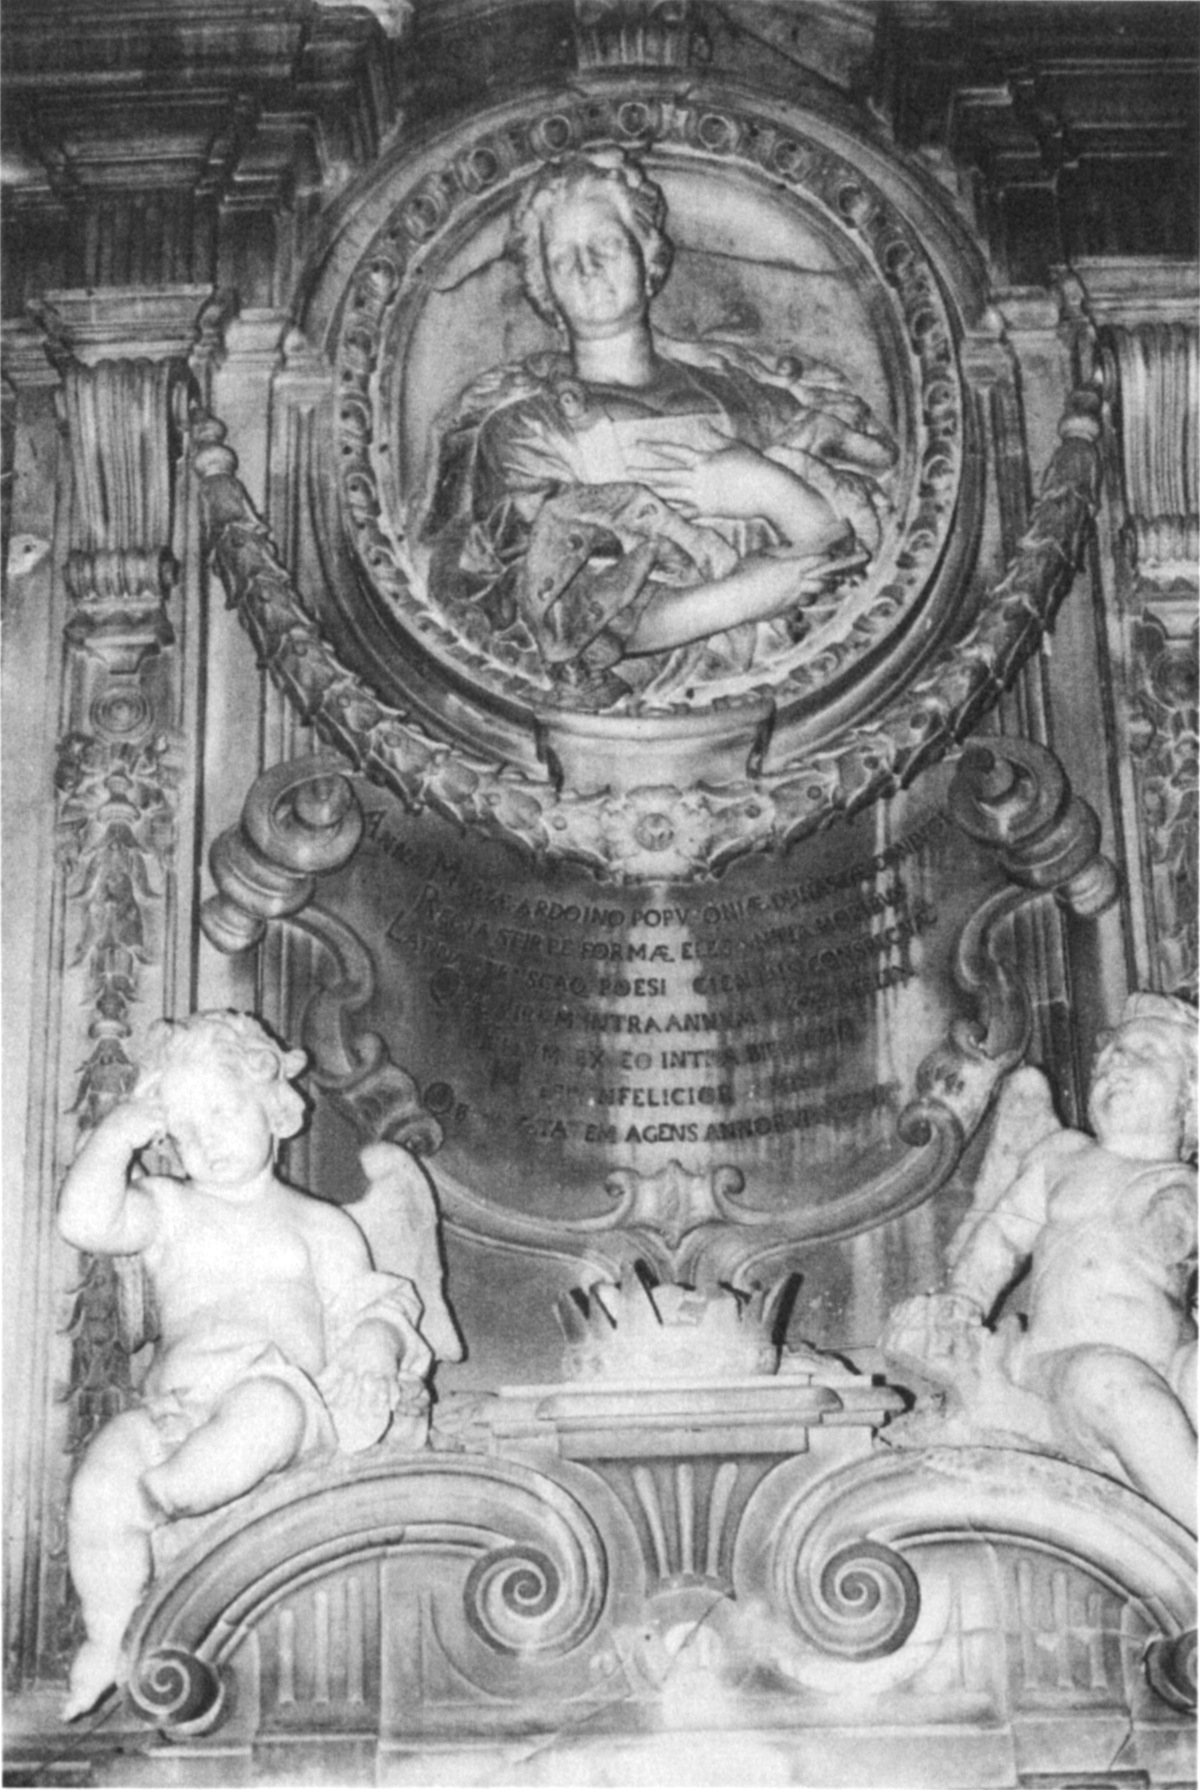 Monumento Funebre per la Principessa di Piombino-Gaetano Sacco-Napoli-Copyrght2002.MariaRosariaVoccia.TuttiiDirittiRiservati